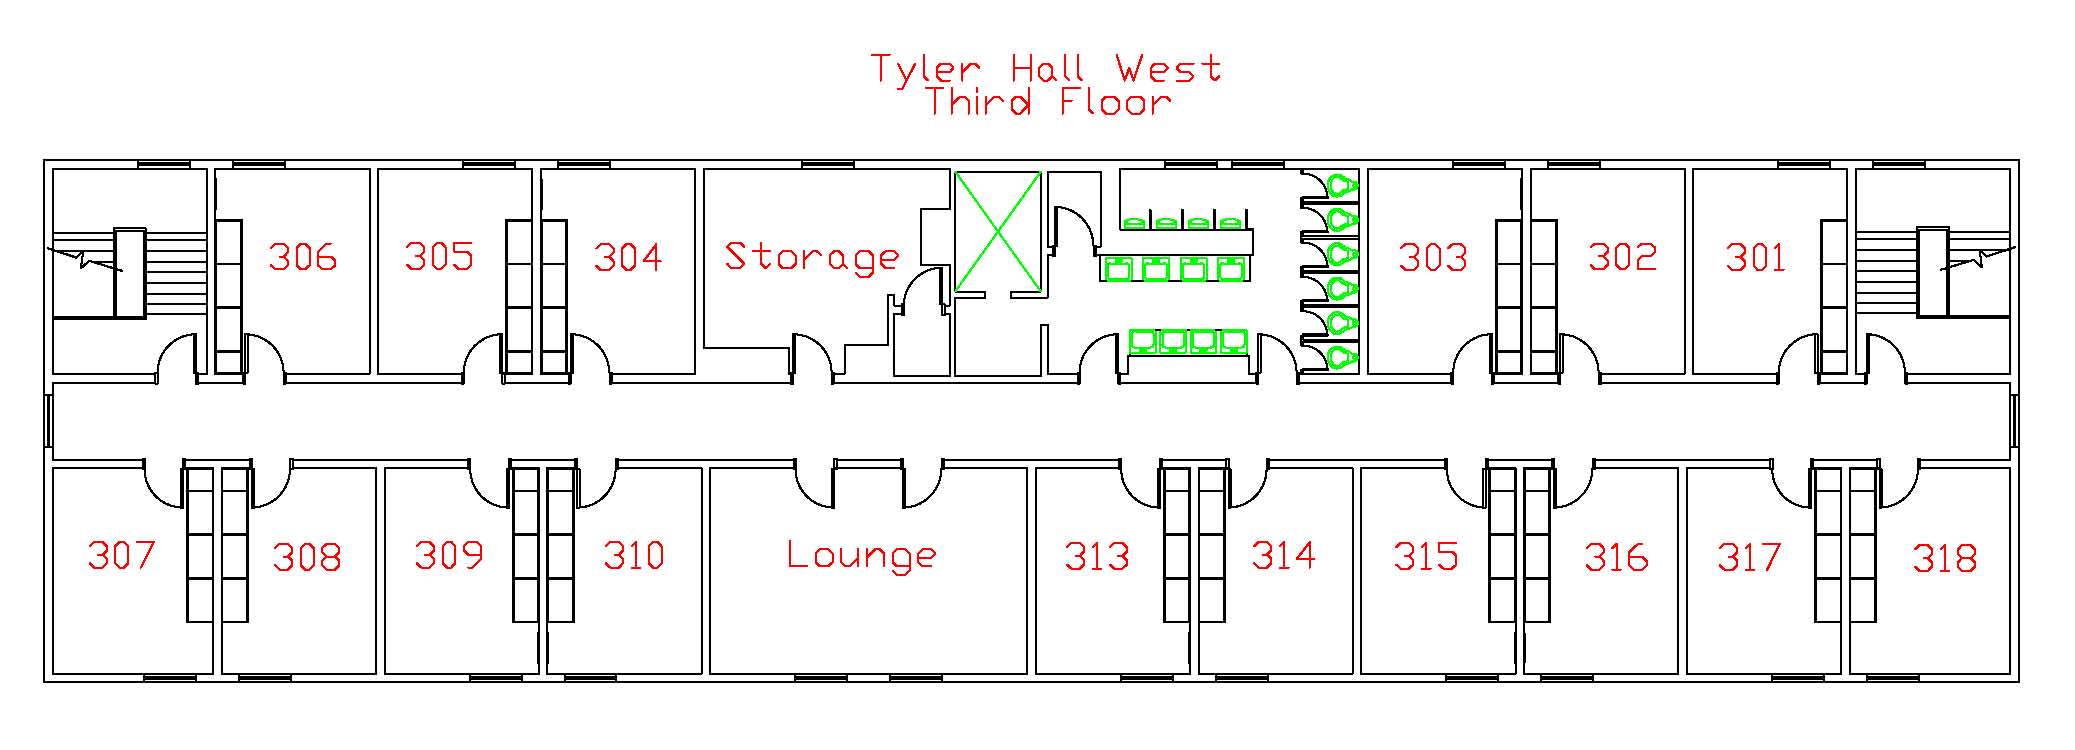 Tyler West Third Floor